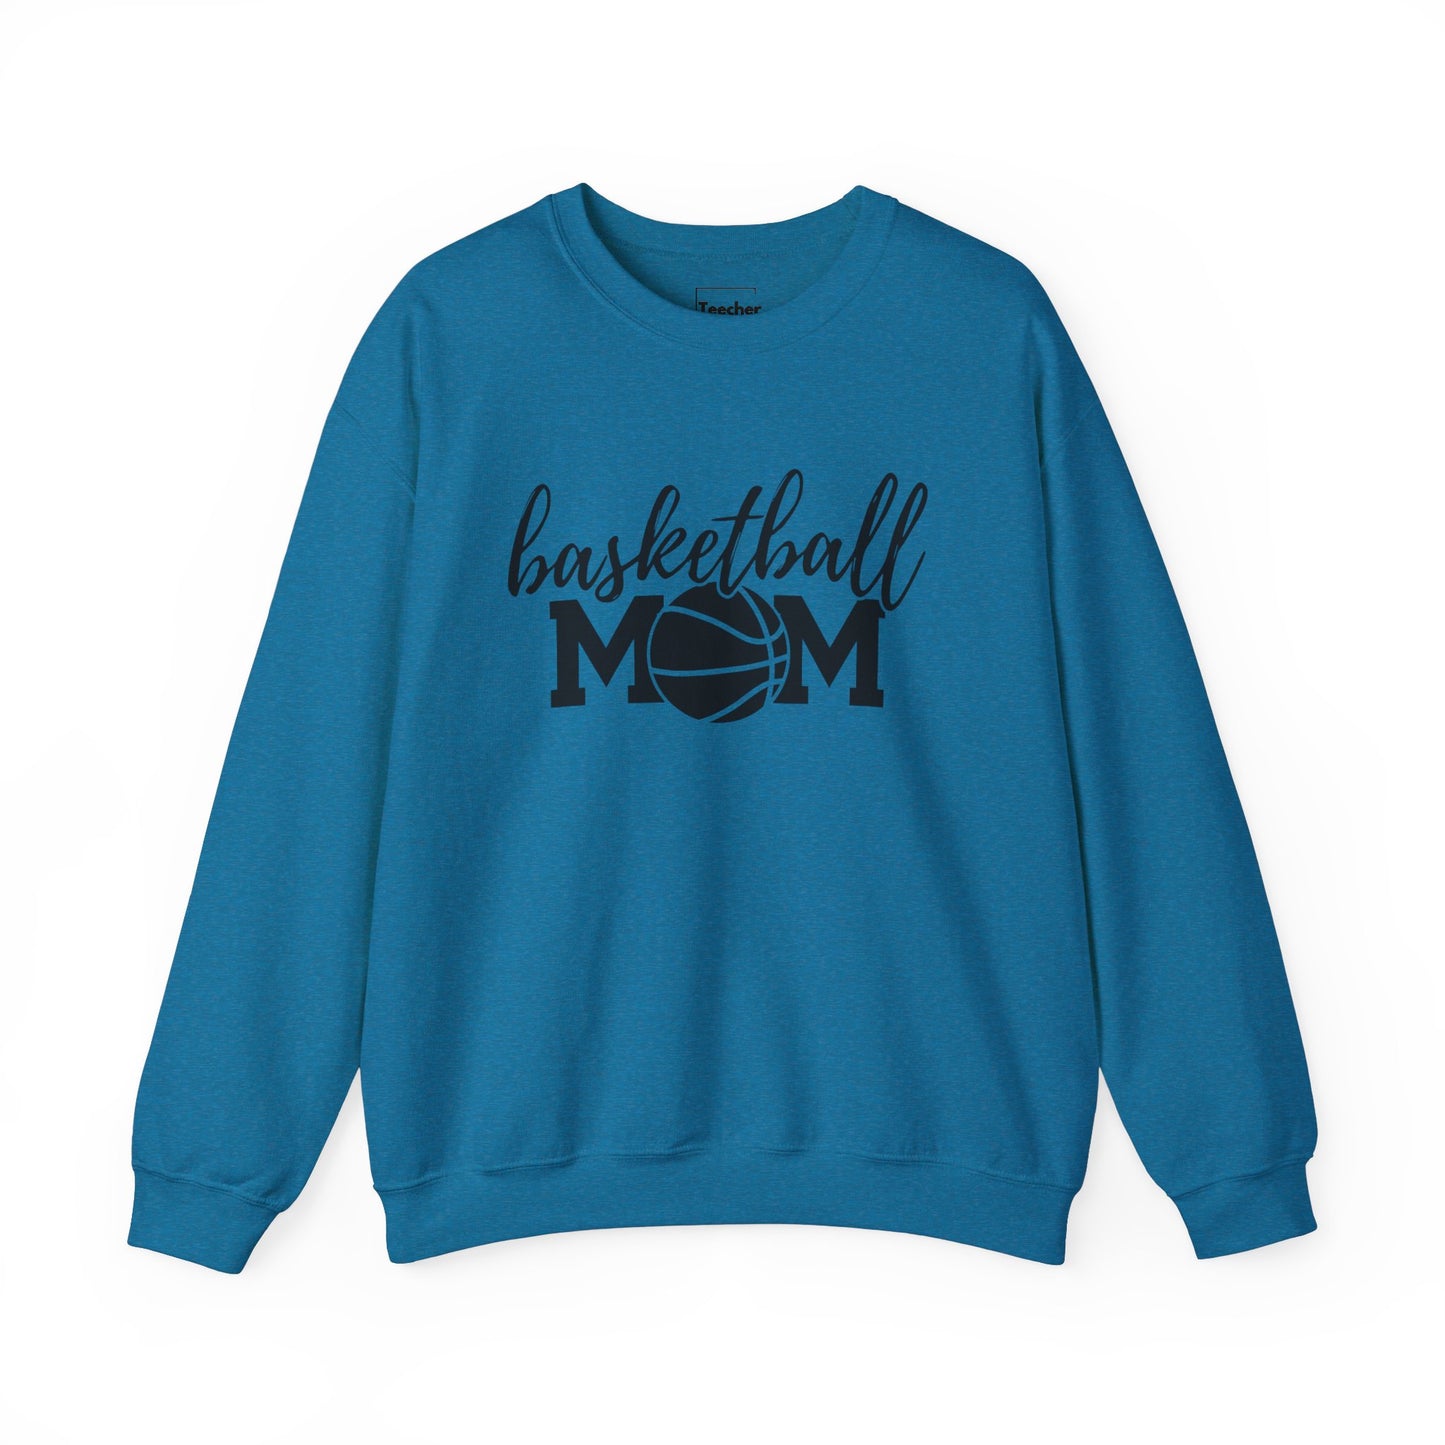 Basketball MOM Crewneck Sweatshirt